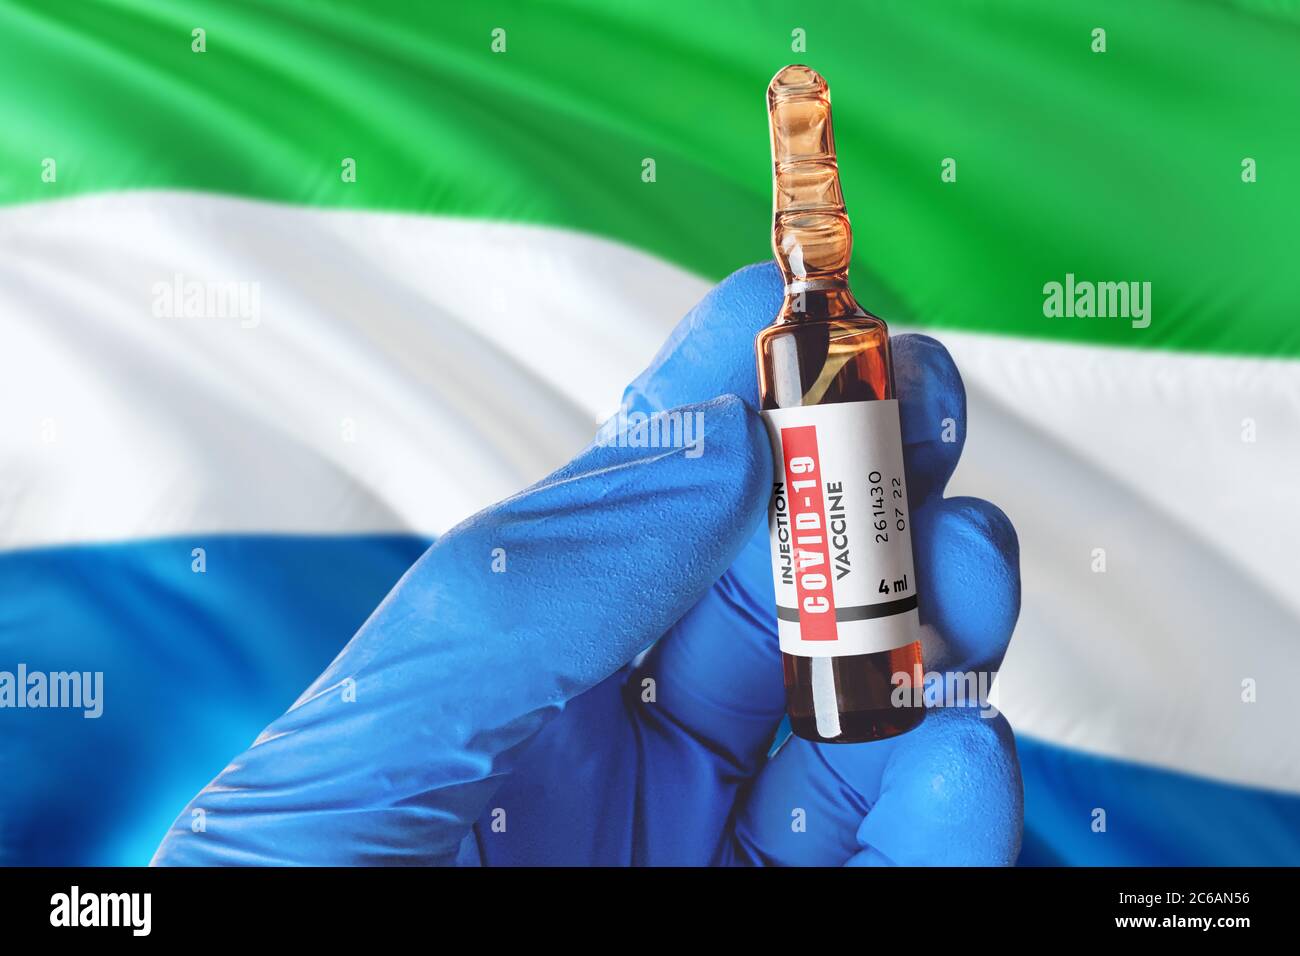 Flagge Sierra Leones mit Coronavirus Covid-19 Konzept. Arzt mit blauen Schutzhandschuhen hält eine Impfstoffflasche. Coronavirus covid 19 Impfstoff r Stockfoto